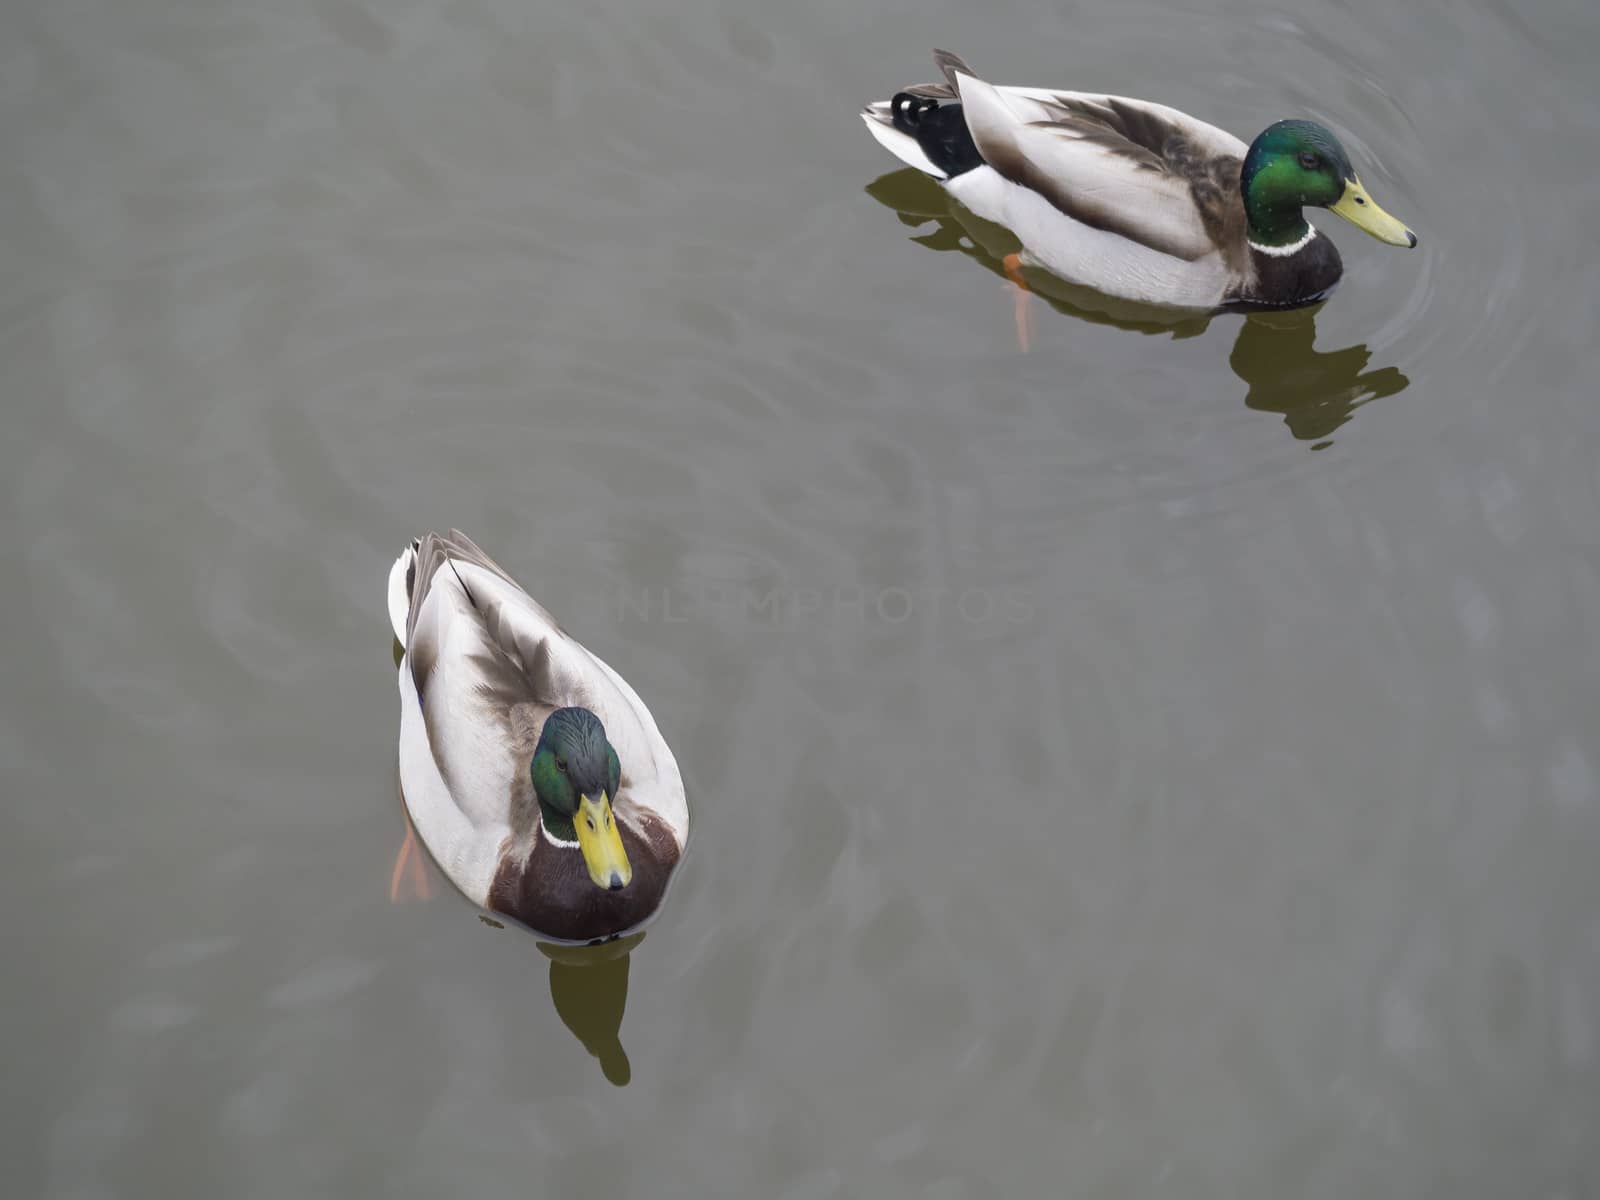 two widgeon drake duck swiminng on water suface by Henkeova